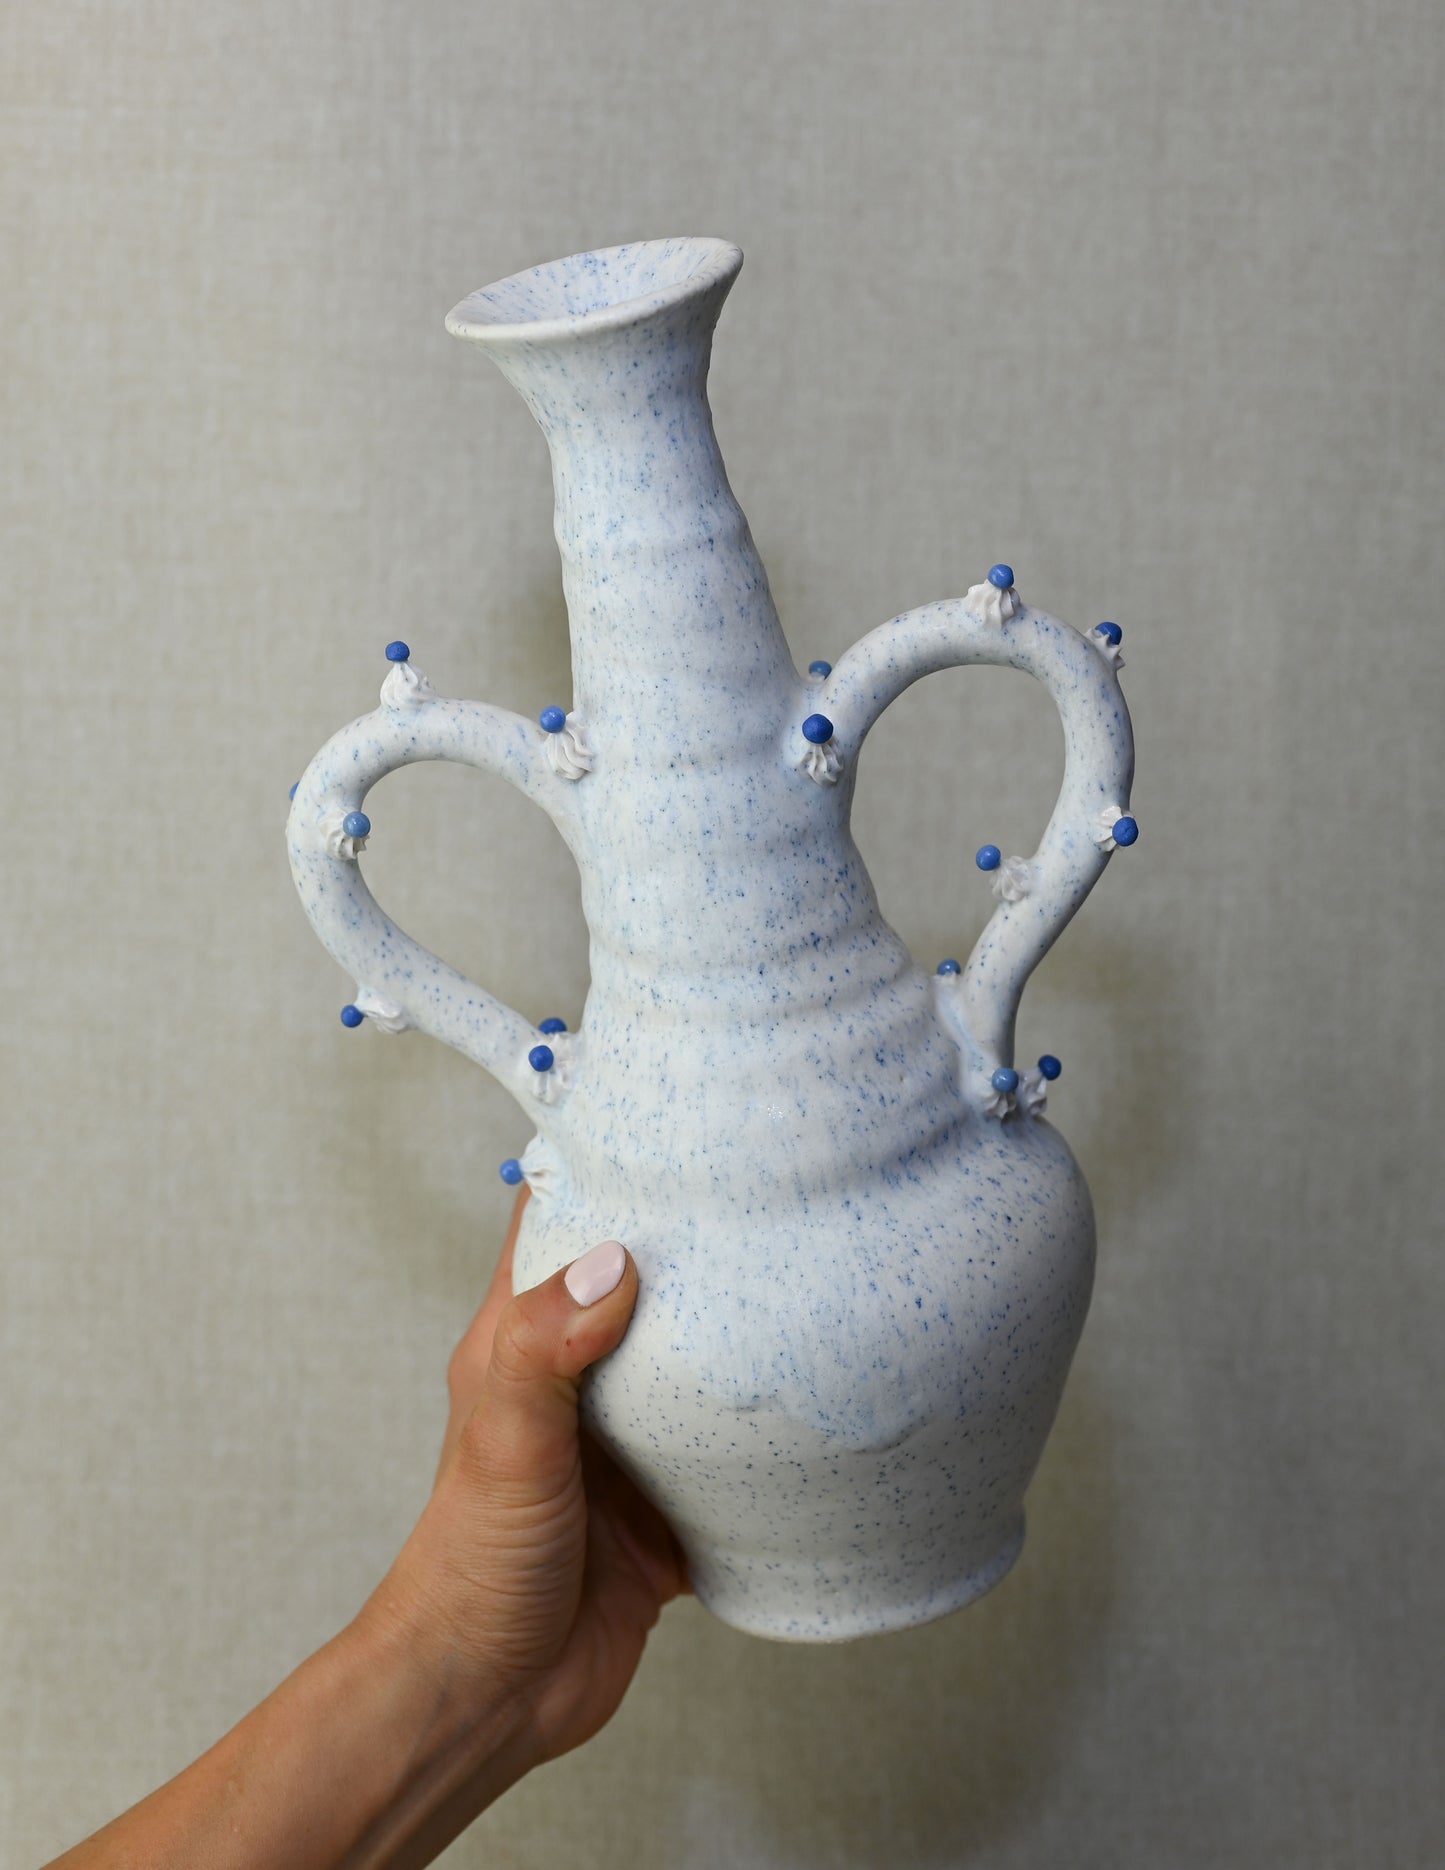 Armed Vase (Large) Cake Vessel - Stoneware & Porcelain